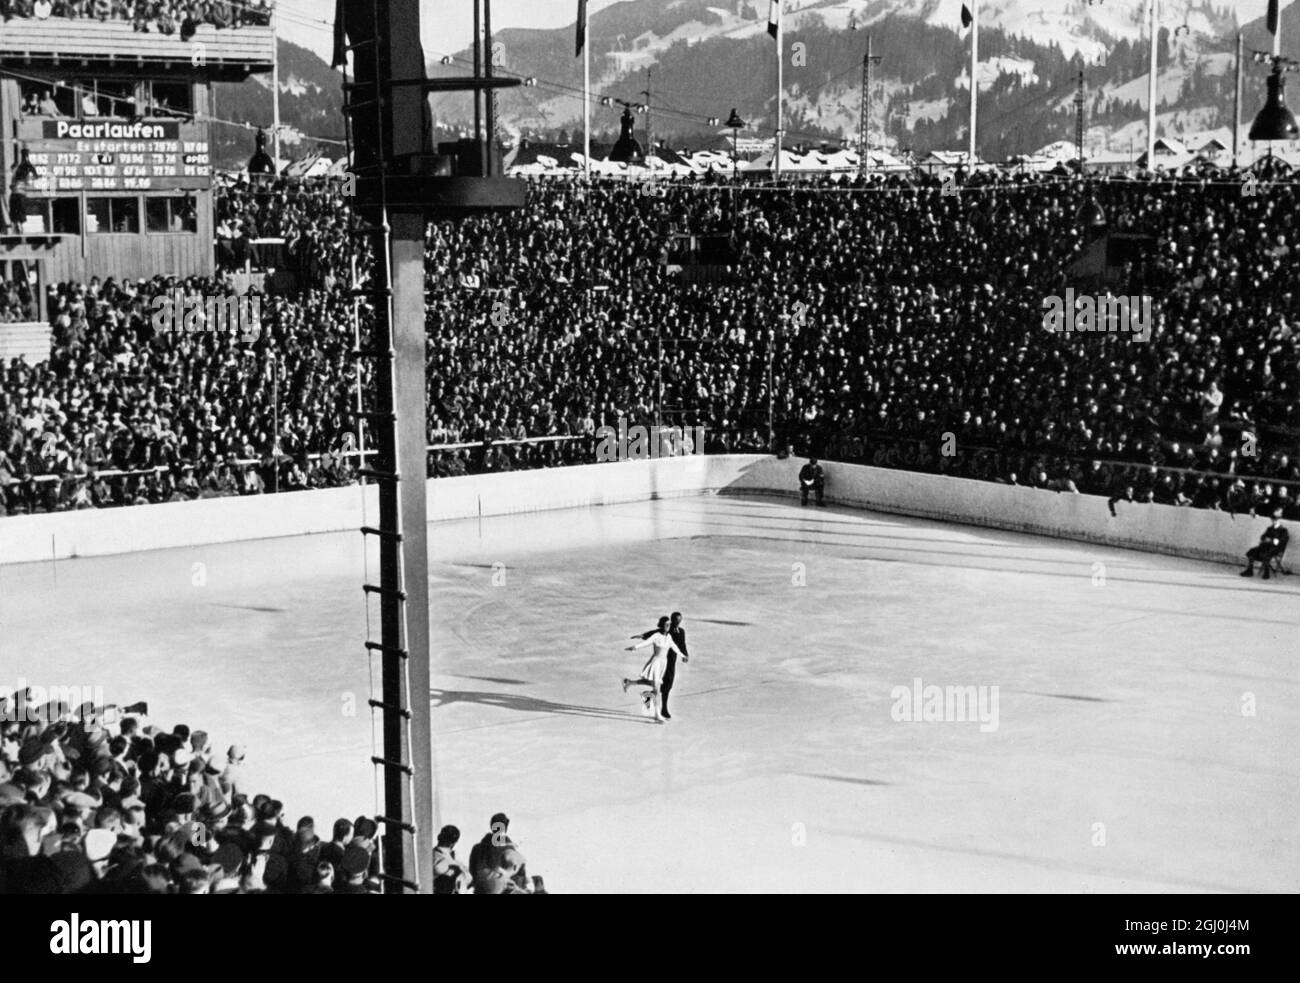 1936 Olympis - Maxie Herber & Ernst Baier - Paar-Skater Ernst Baier (geboren am 27. September 1905 in Zittau, Sachsen, Deutschland - gestorben am 8. Juli 2001 in Garmisch, Bayern, Deutschland) war ein deutscher Eiskunstläufer. Gemeinsam mit Maxi Herber wurde er 1936 paarweise Olympiasieger. Die beiden Skater gewannen auch mehrere Welt- und Europameisterschaften. ©TopFoto Stockfoto